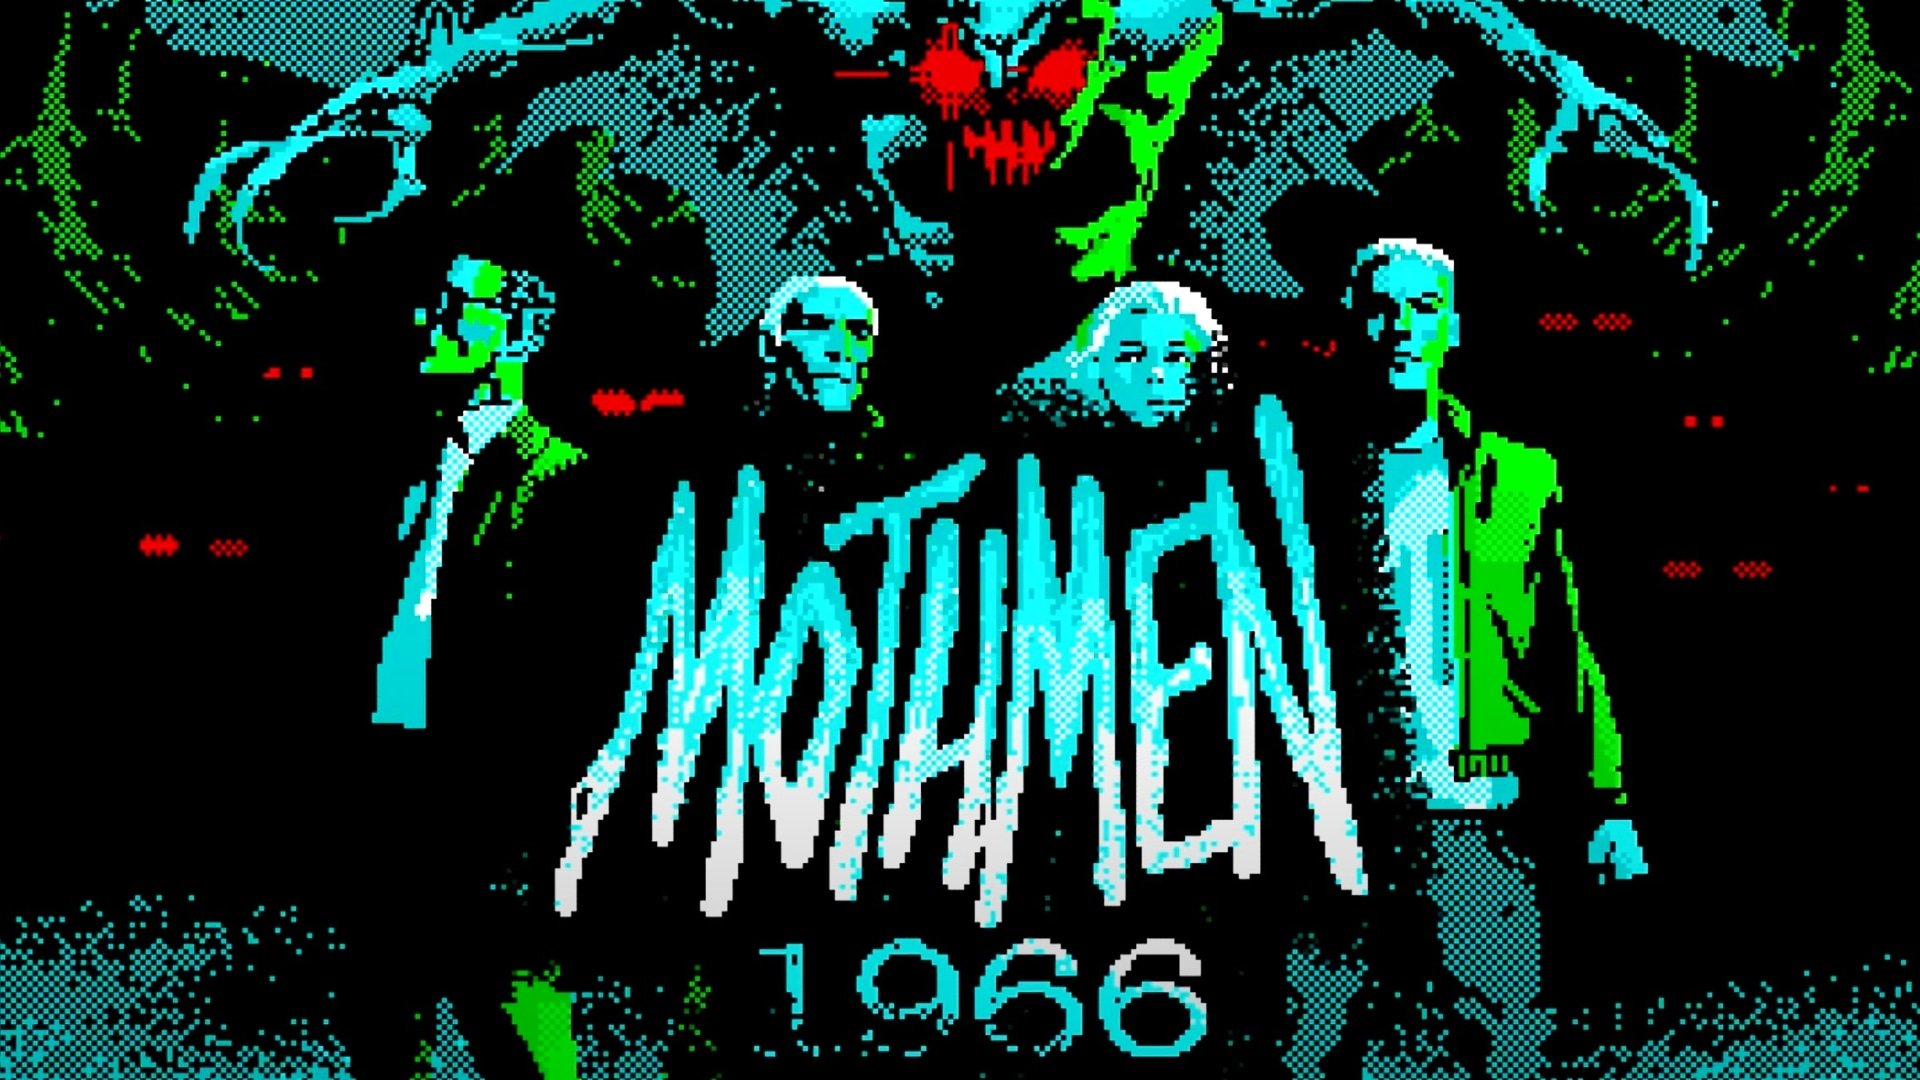 Mothmen 1966 Review Header